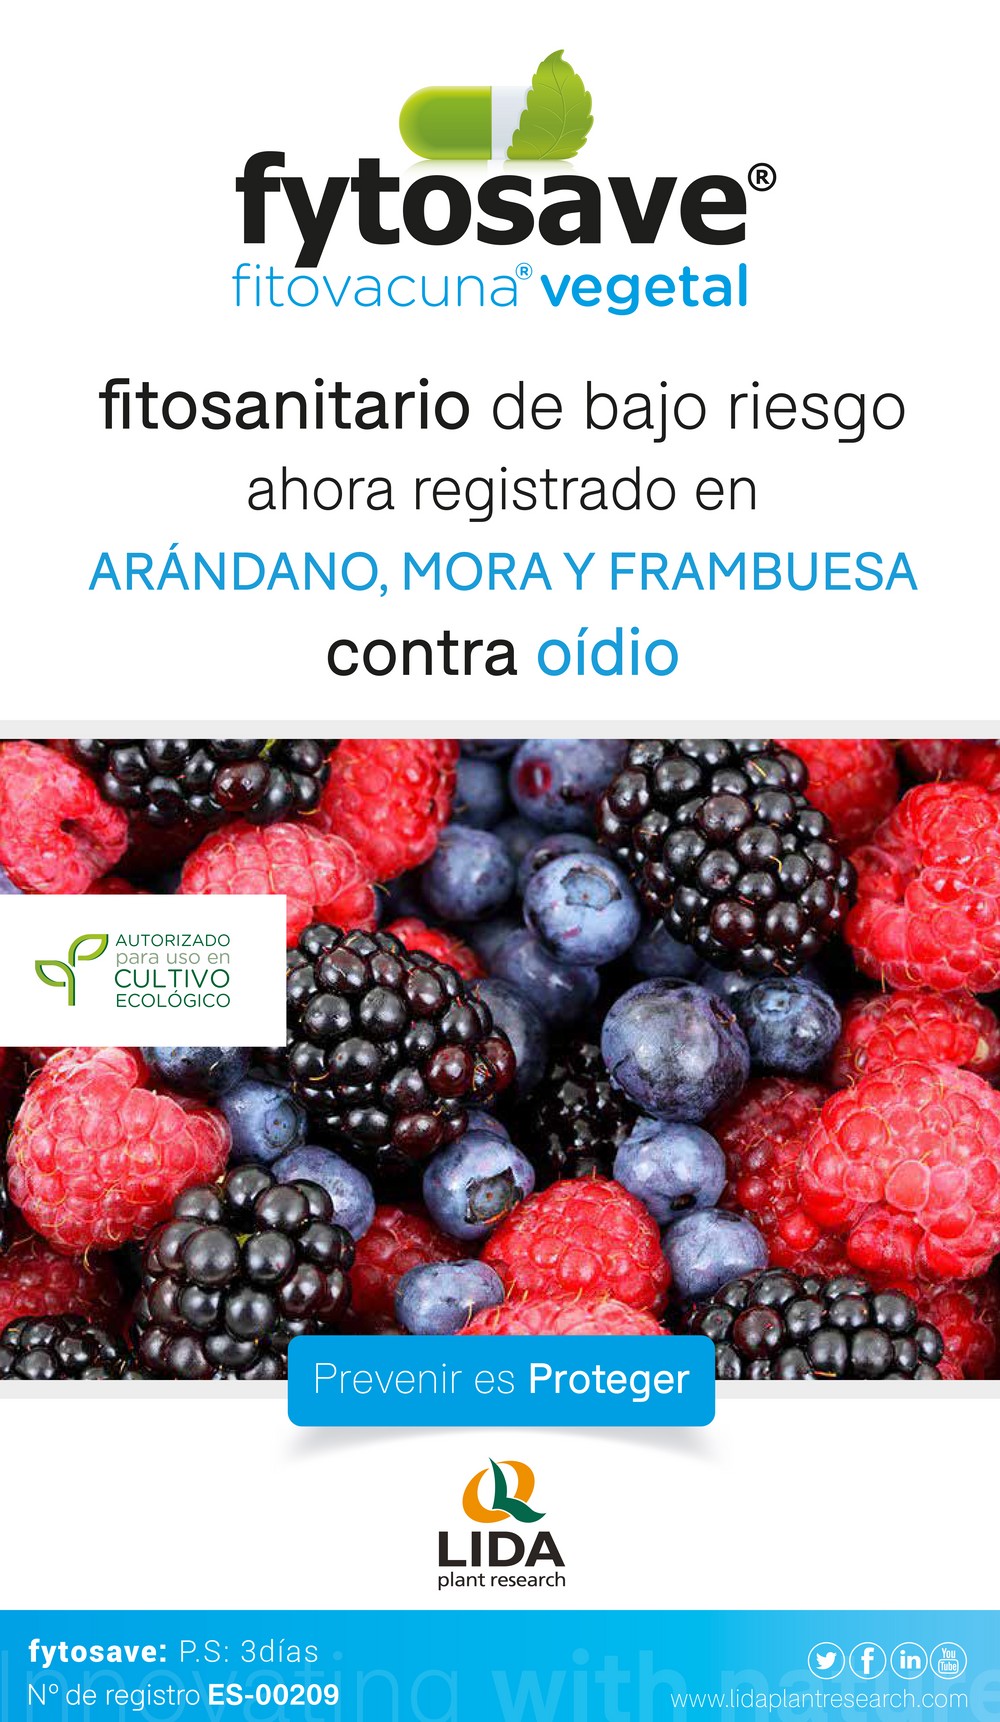 LIDA logra ampliar el registro de la fitovacuna vegetal Fytosave® para alcachofa y frutos del bosque contra el oídio